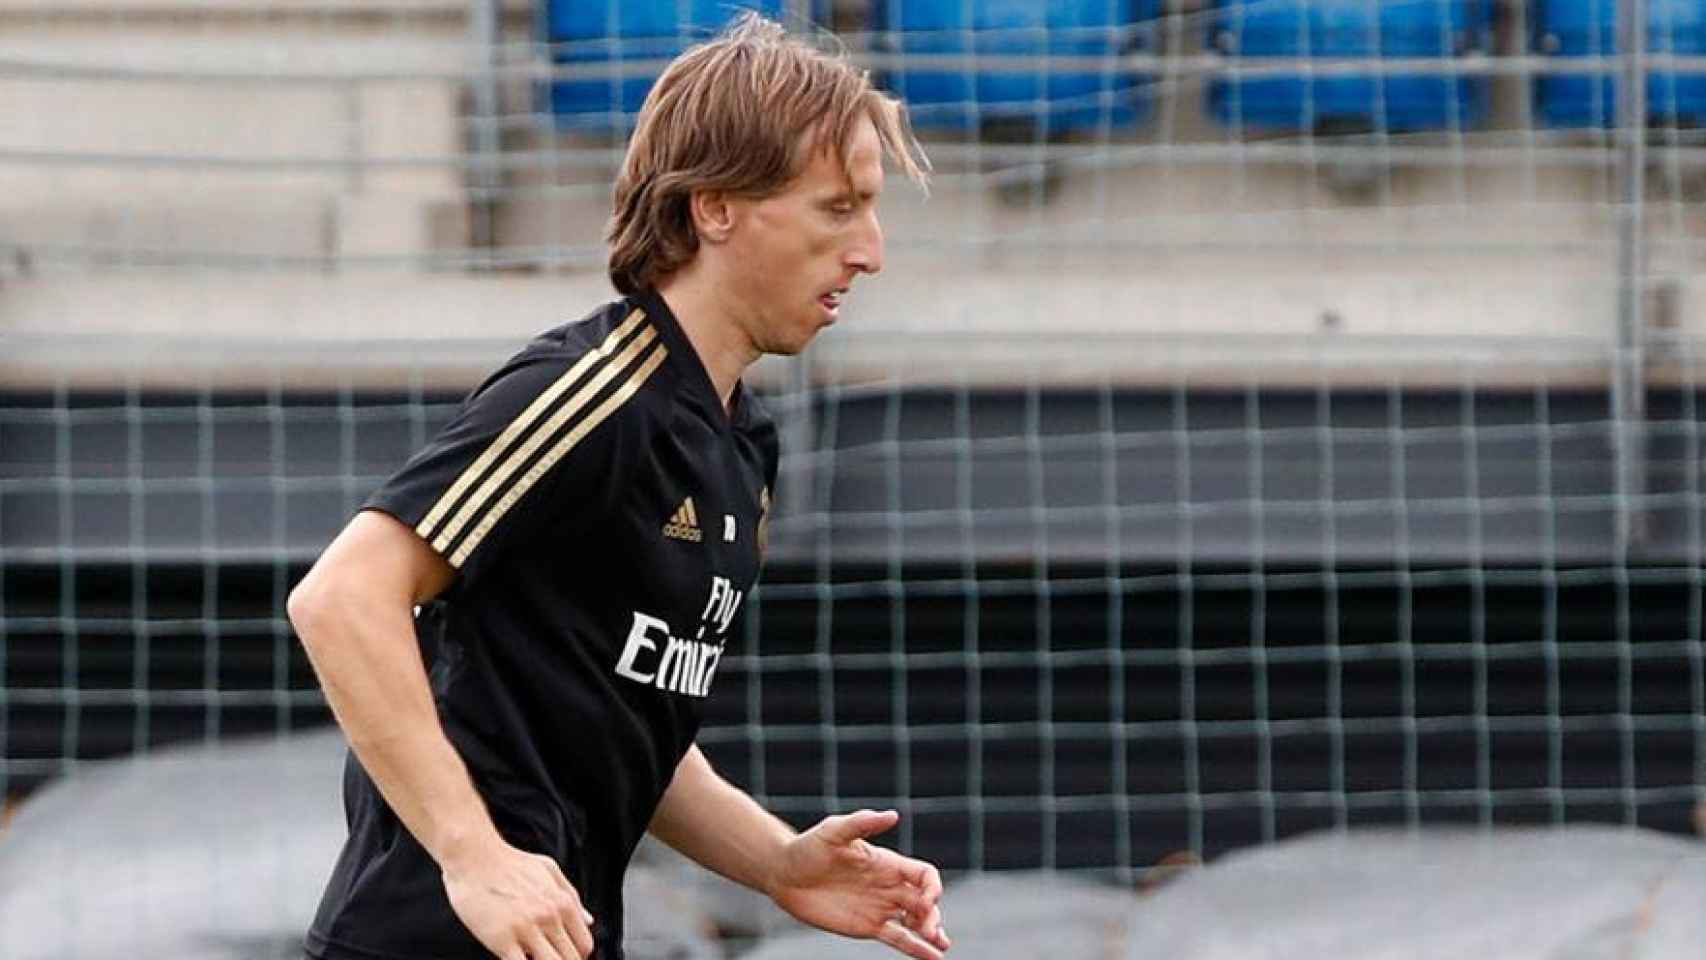 Modric, en un entrenamiento del Real Madrid